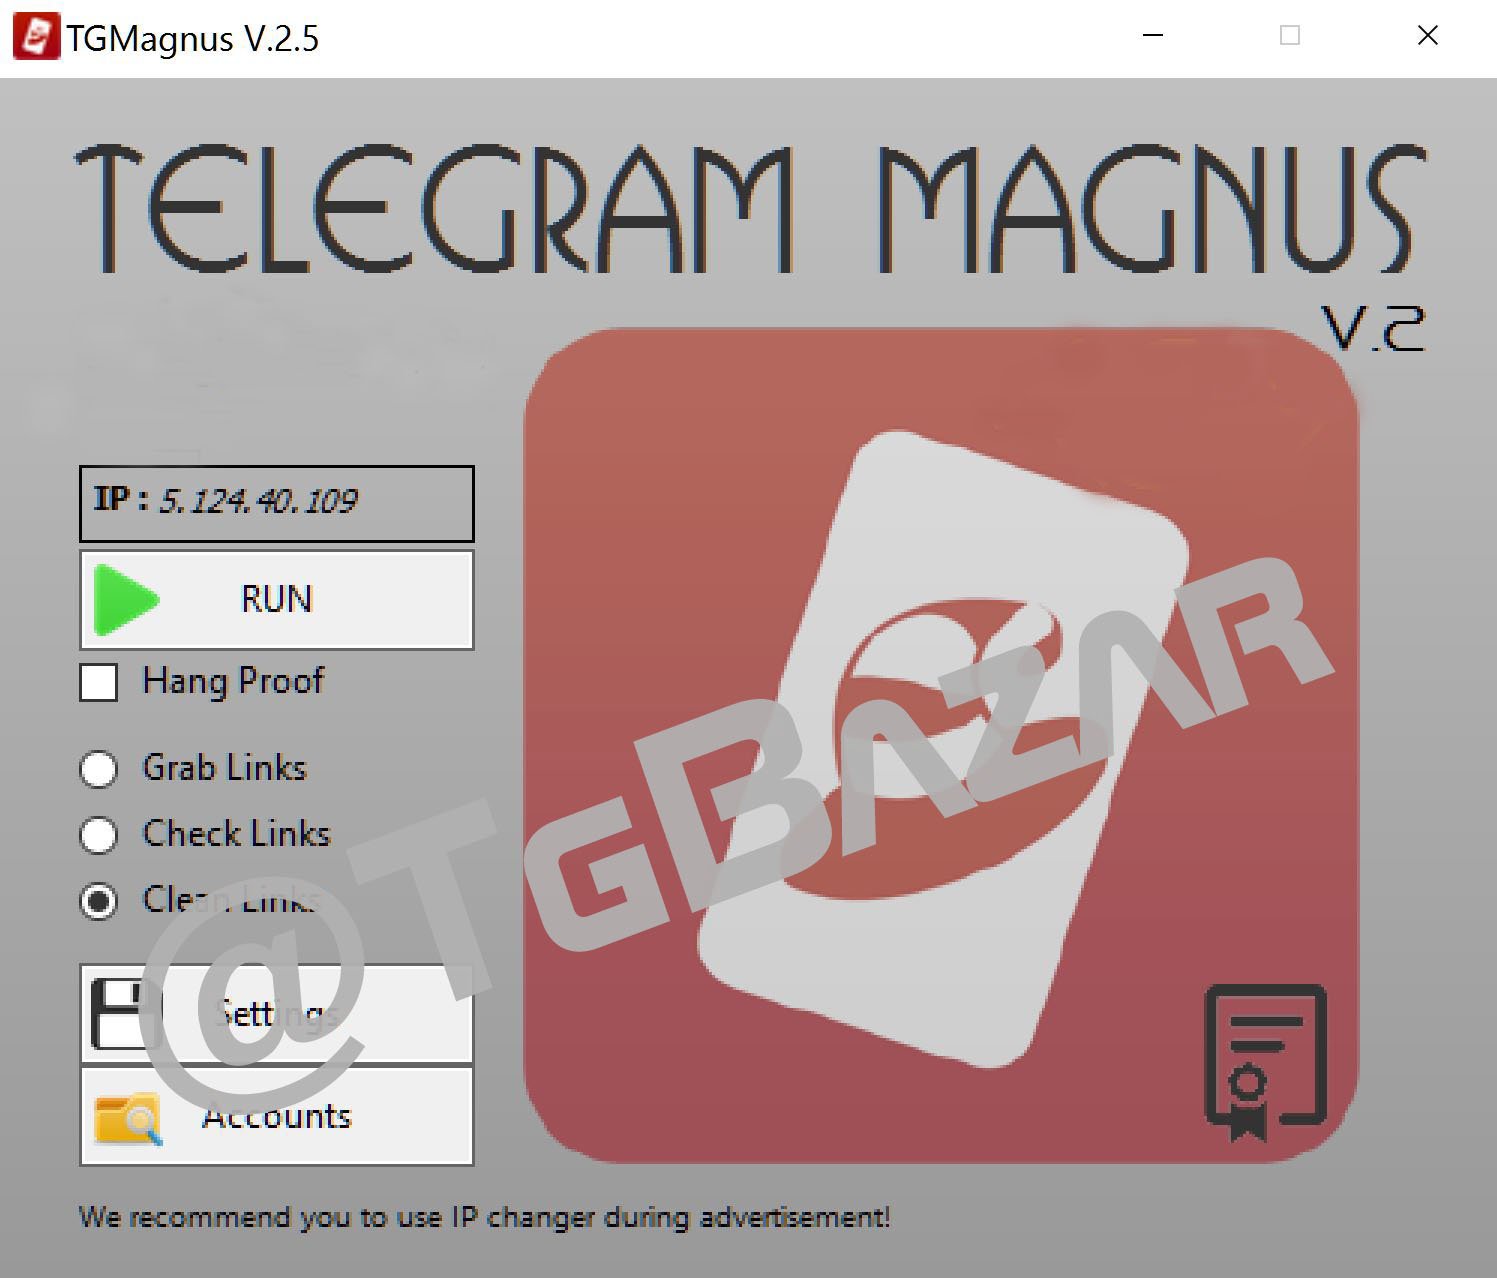 Magnus telegram